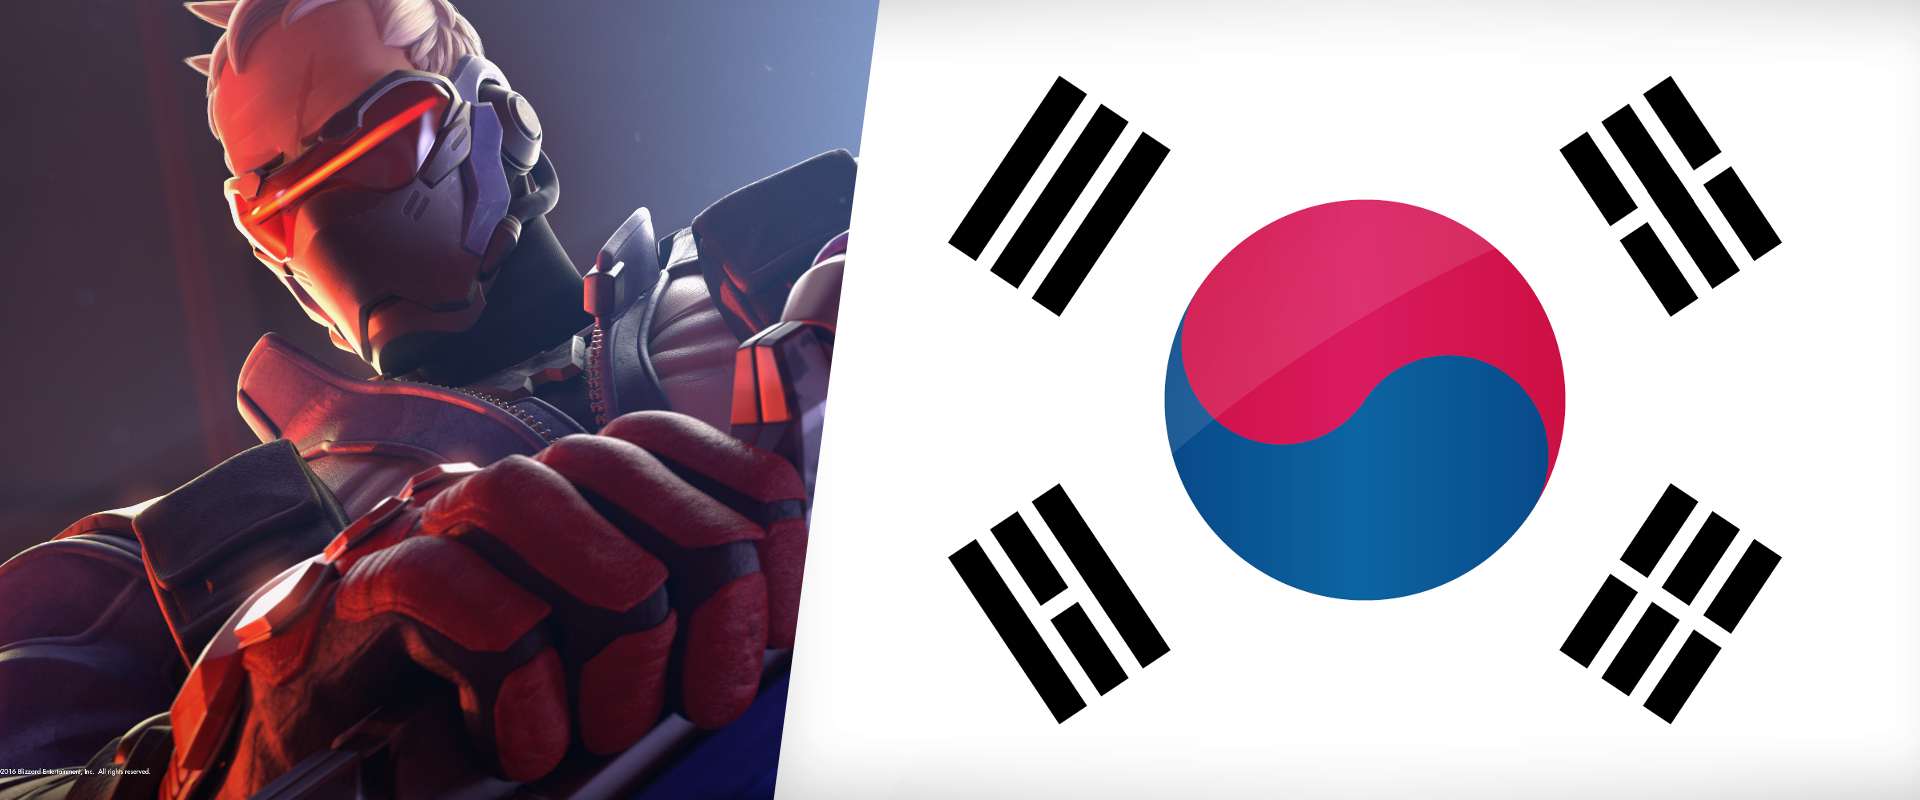 Bundabotrány és eltiltás a koreai Overwatch-versenyen